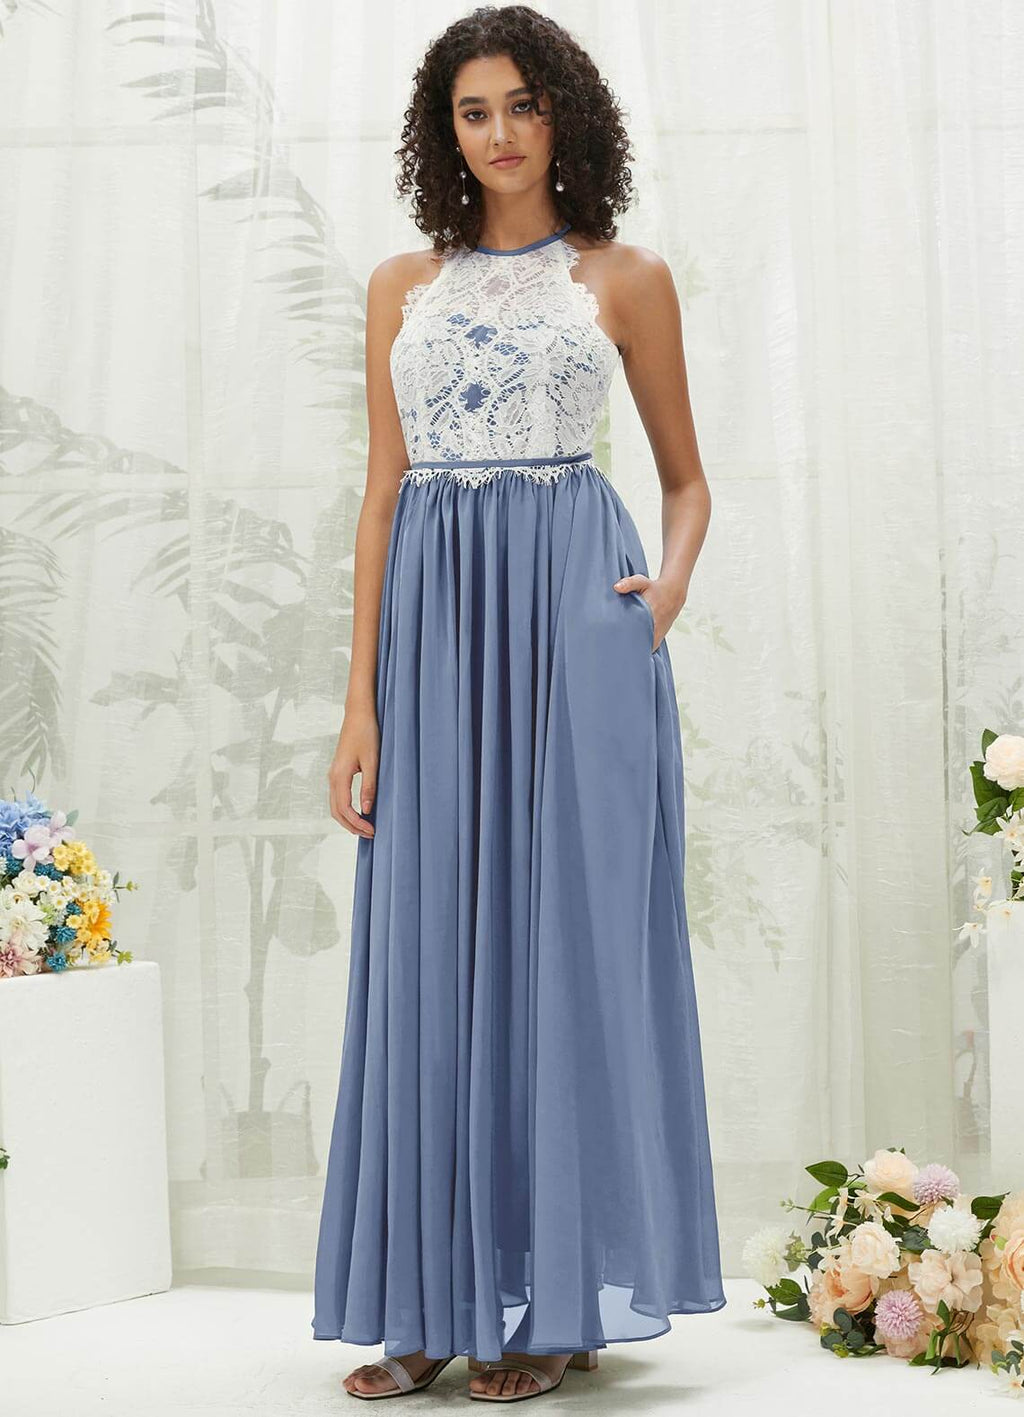 NZ Bridal Slate Blue Chiffon Flowy Bridesmaid Dress with Pocket TC0426 Heidi a